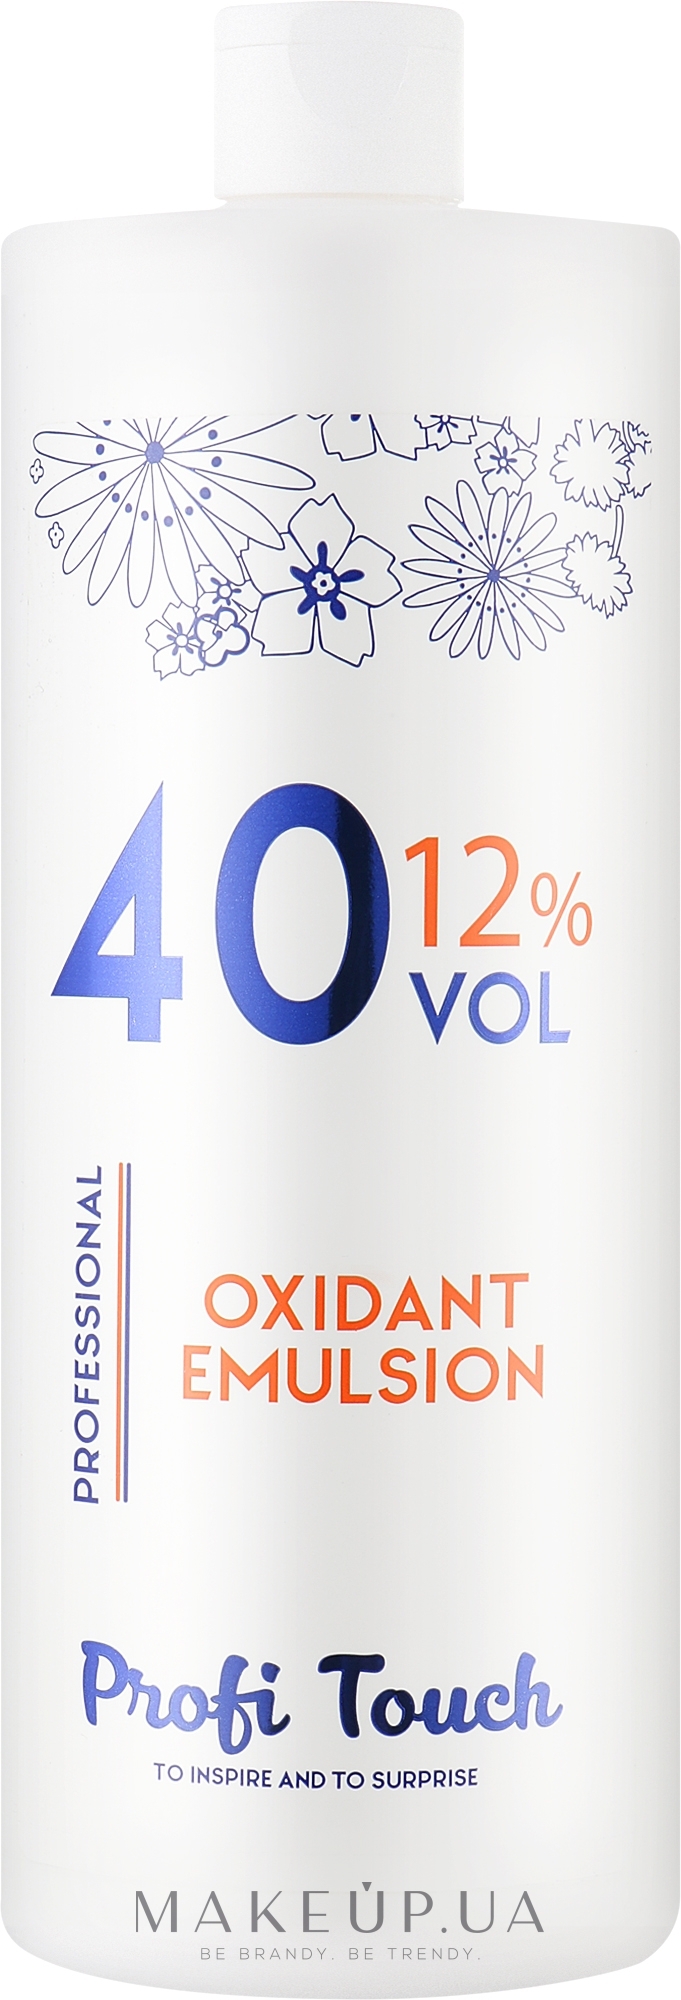 Гель-окислитель 40 vol 12% - Profi Touch Oxidant Emulsion — фото 1000g